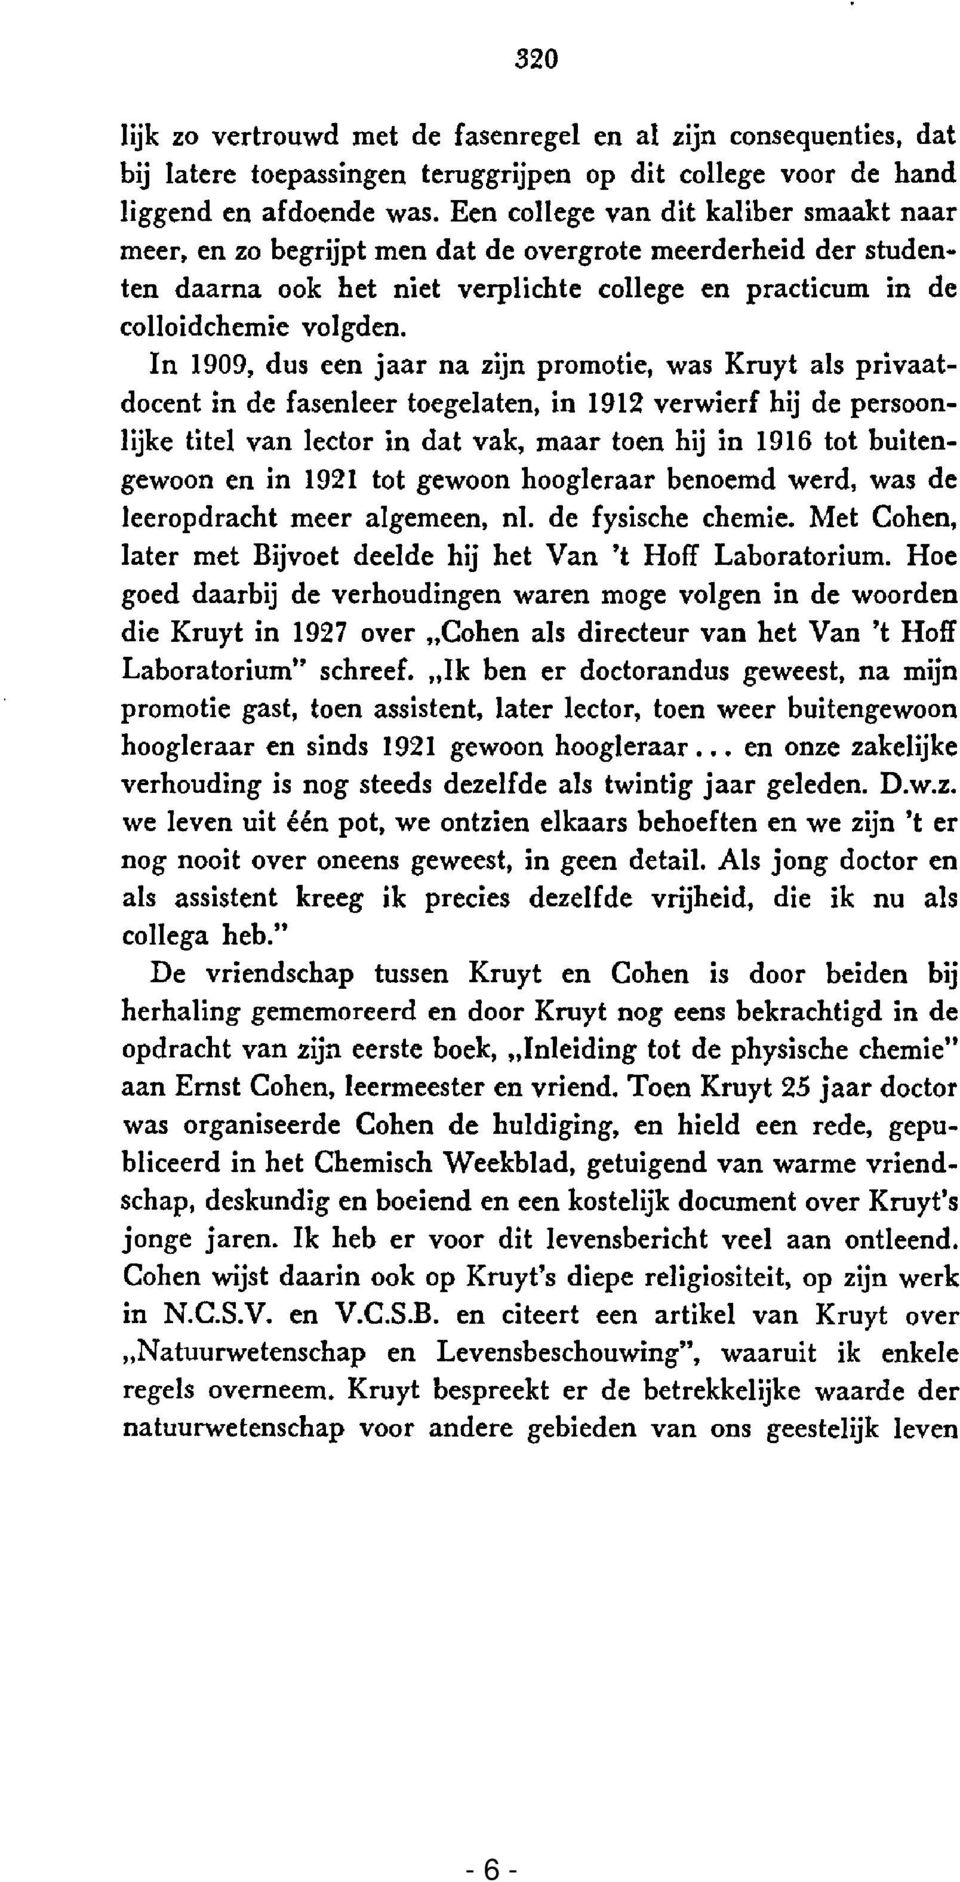 In 1909, dus een jaar na zijn promotie, was Kruyt als privaatdocent in de fasenleer toegelaten, in 1912 verwierf hij de persoonlijke titel van lector in dat vak, maar toen hij in 1916 tot